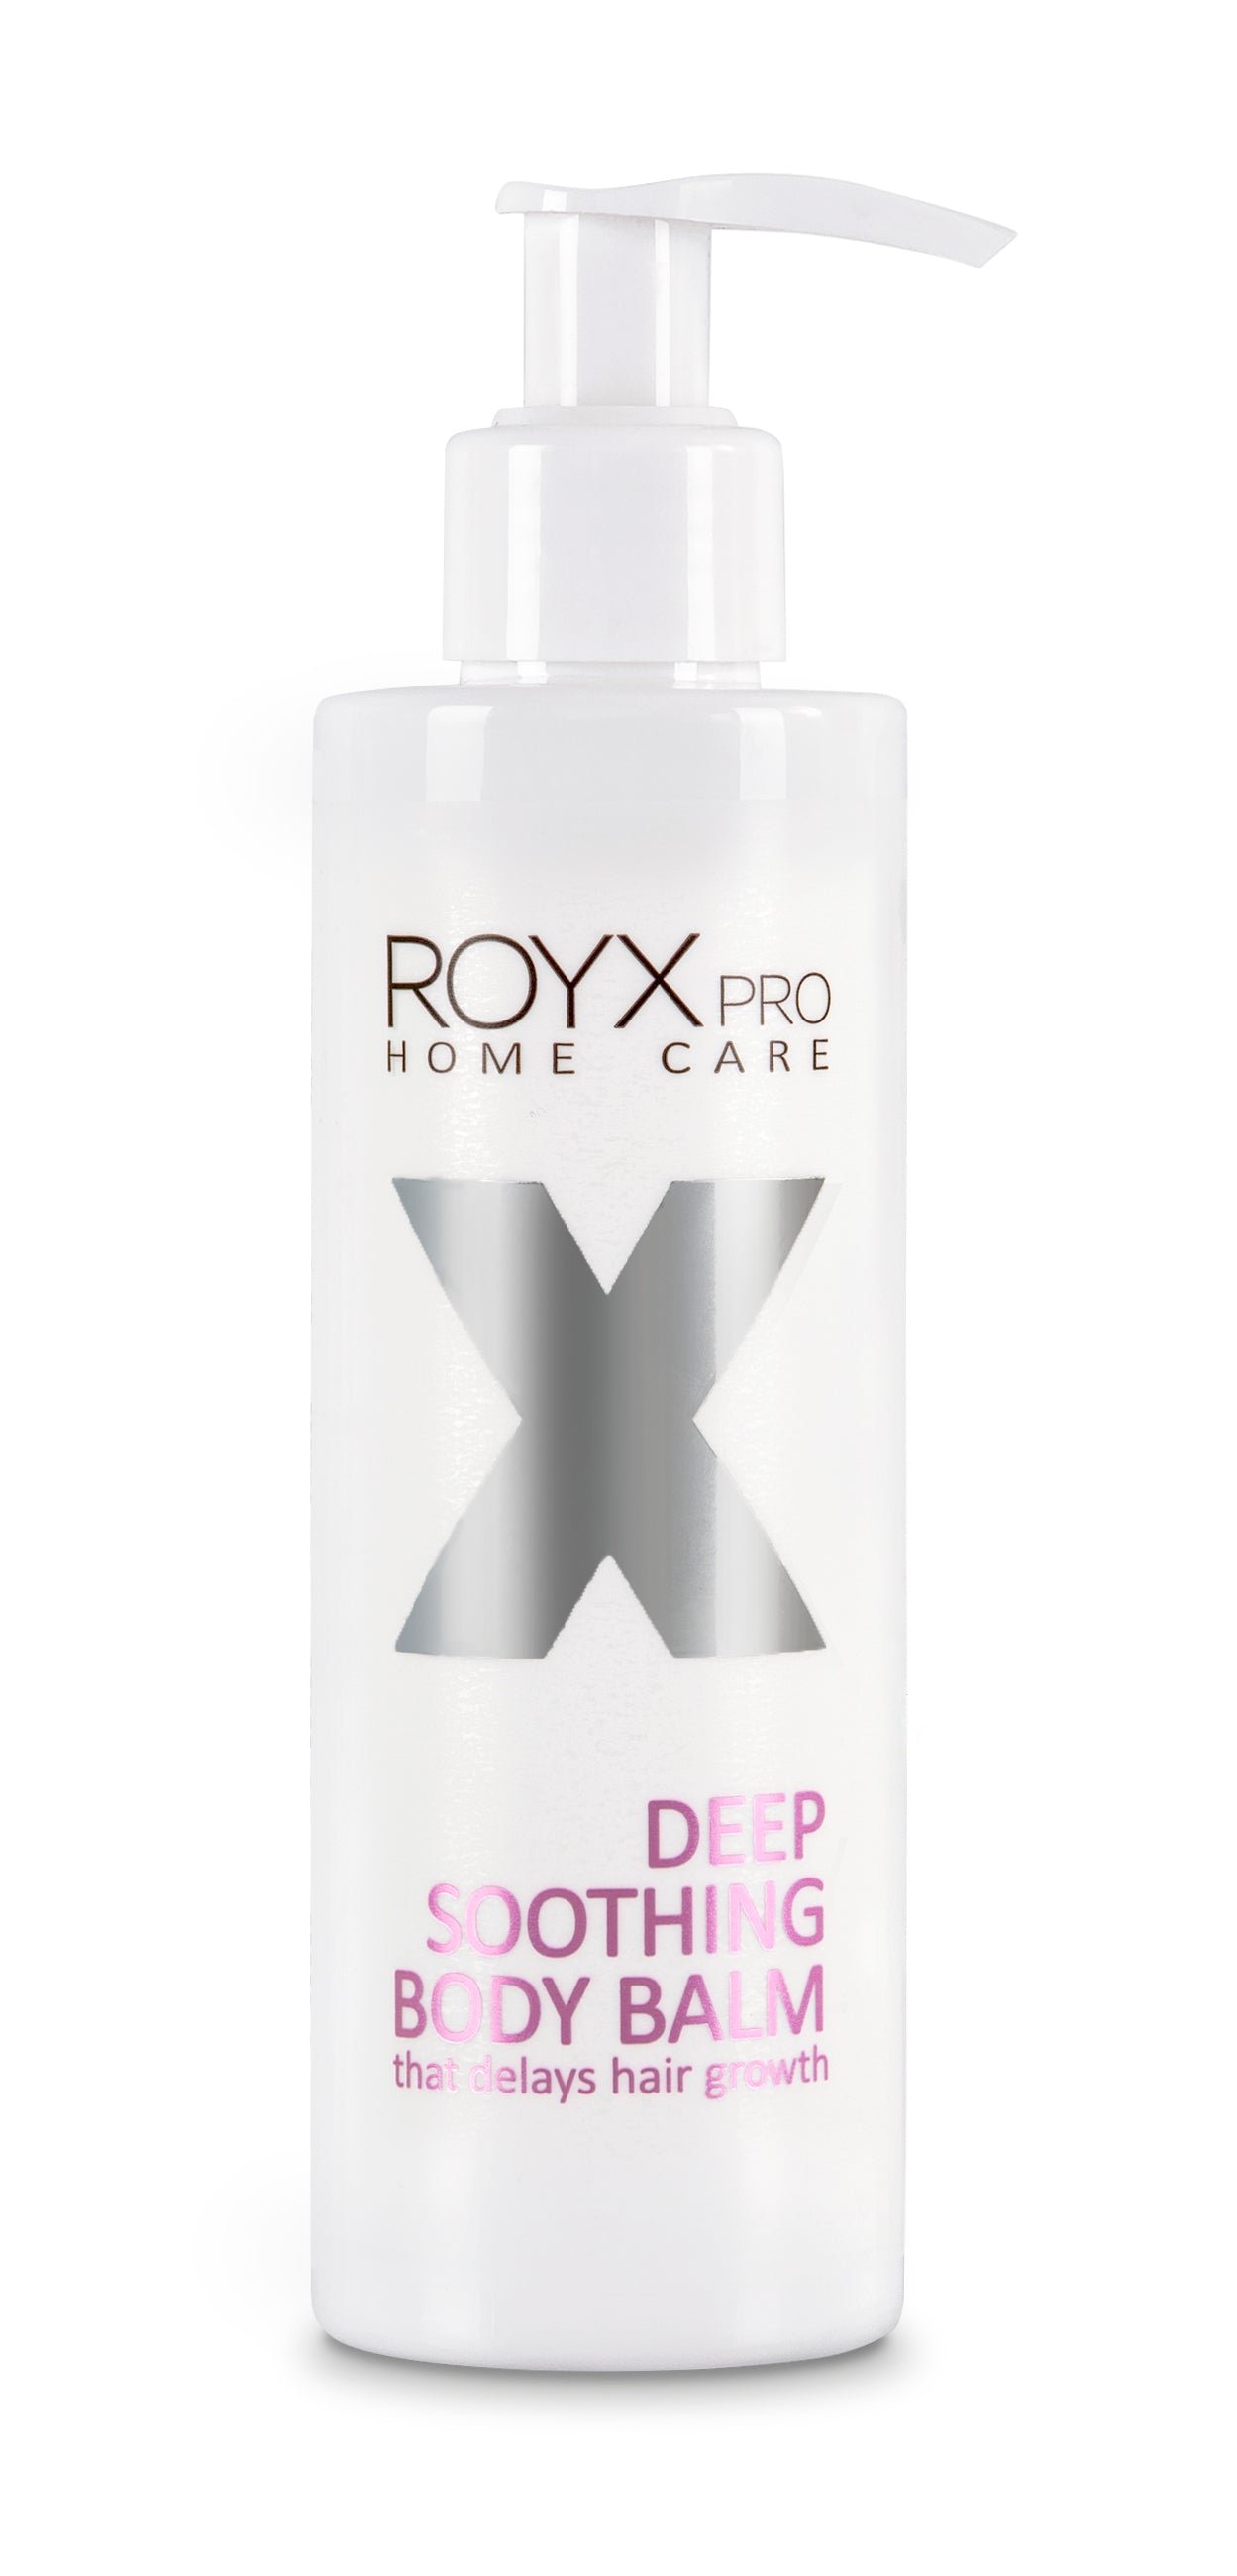 ROYX DEEP SOOTHING BODY BALM - Kosteuttaa ihoa  ja hidastaa karvan takaisinkasvua karvanpoiston tai sokeroinnin jälkeen